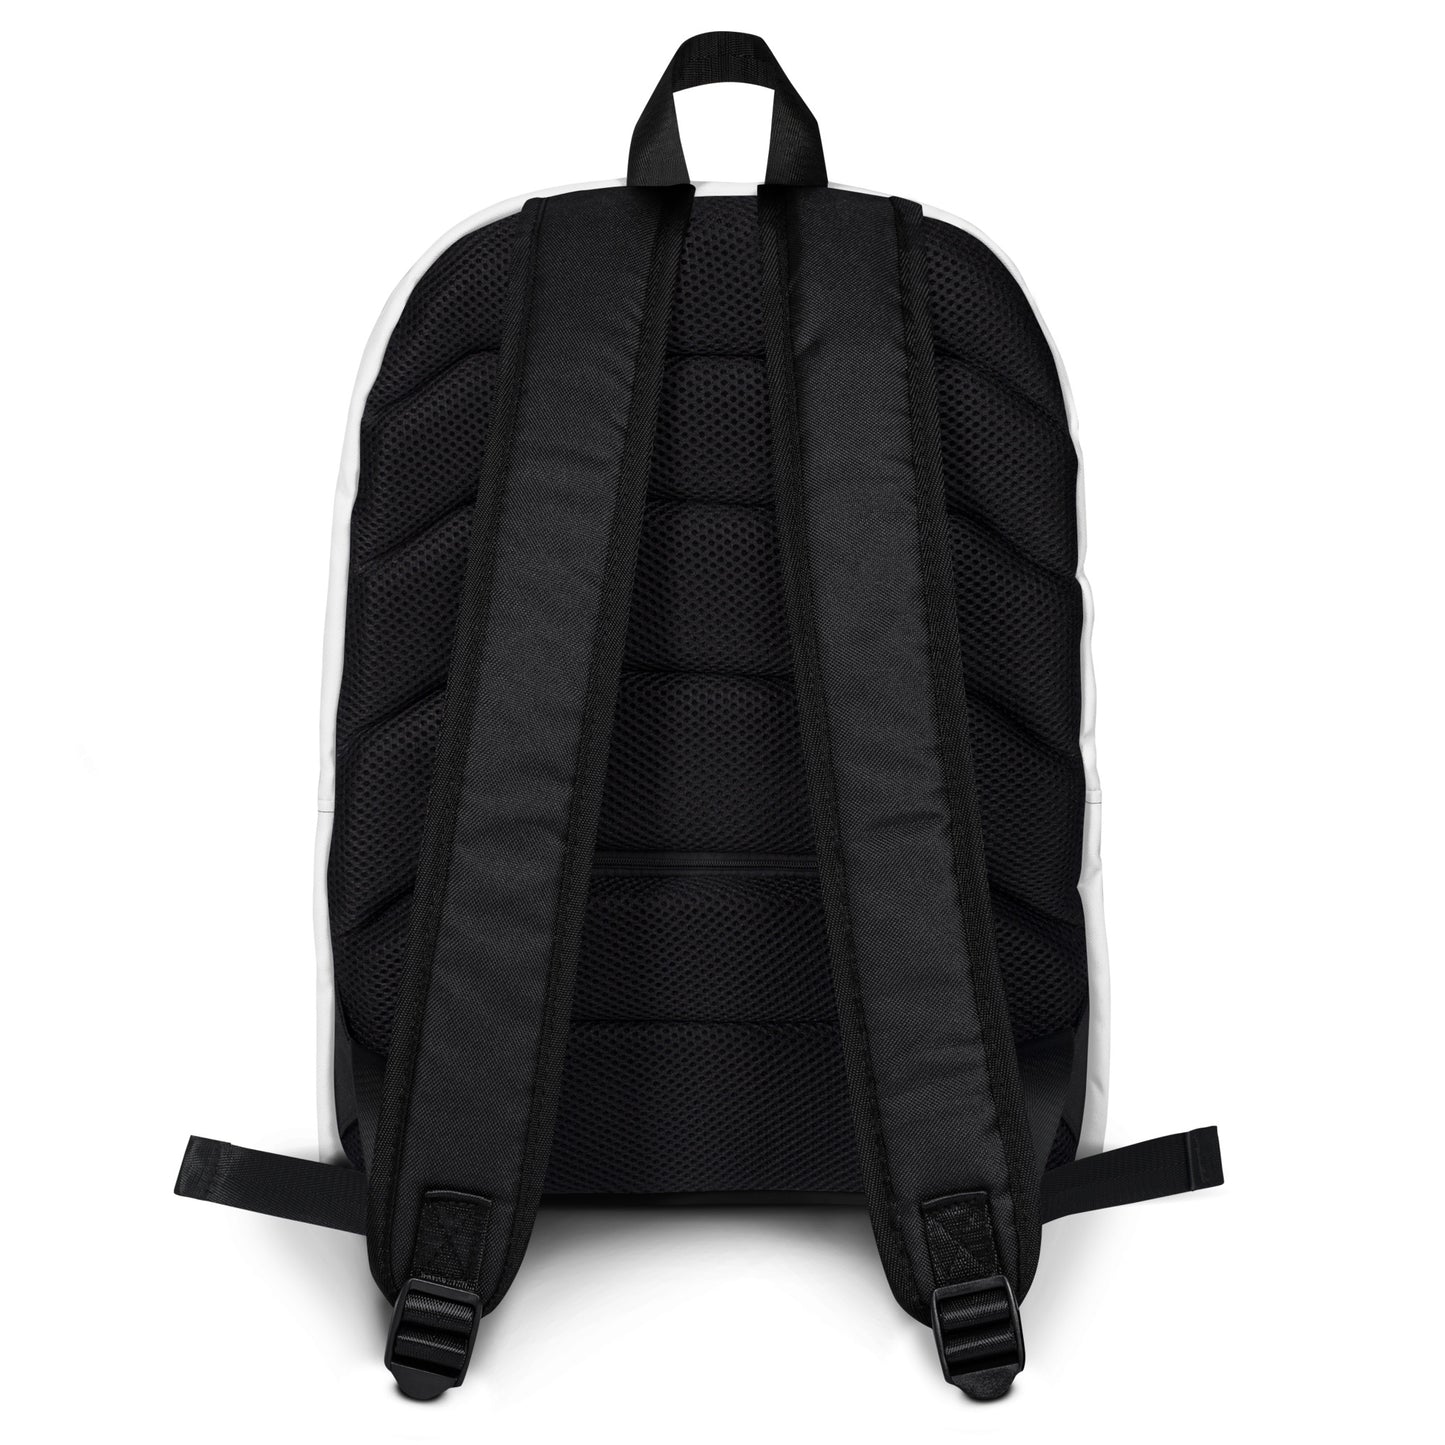 Resonance Backpack